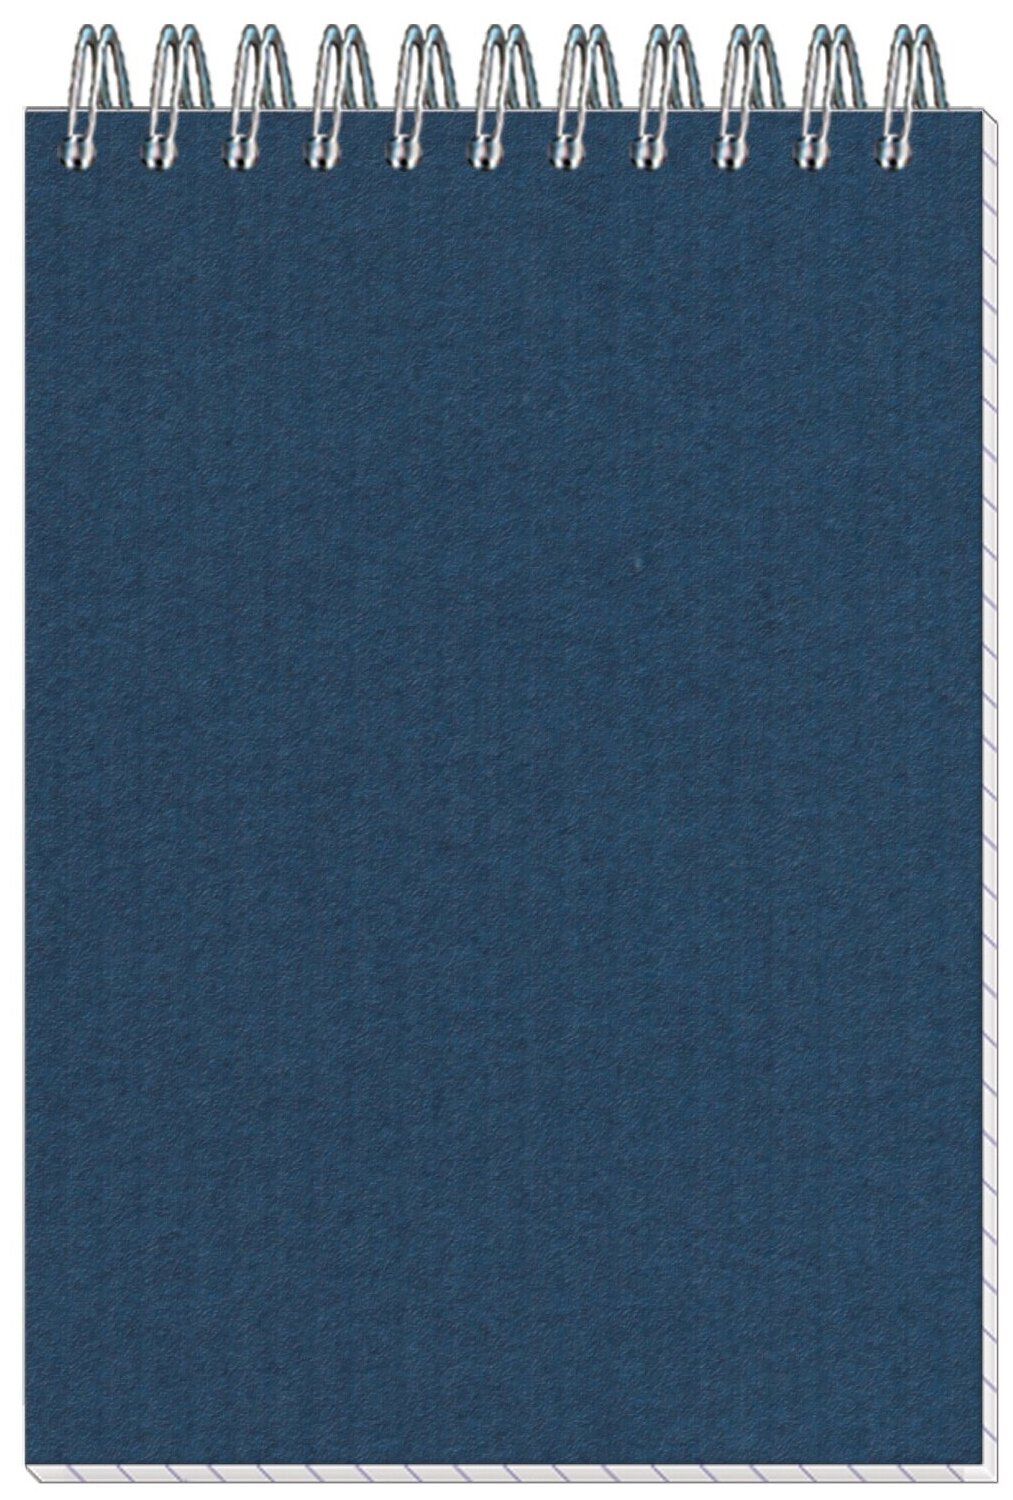 Блокнот Комус Микро вельвет, А6, 50 листов, спираль, синий, клетка